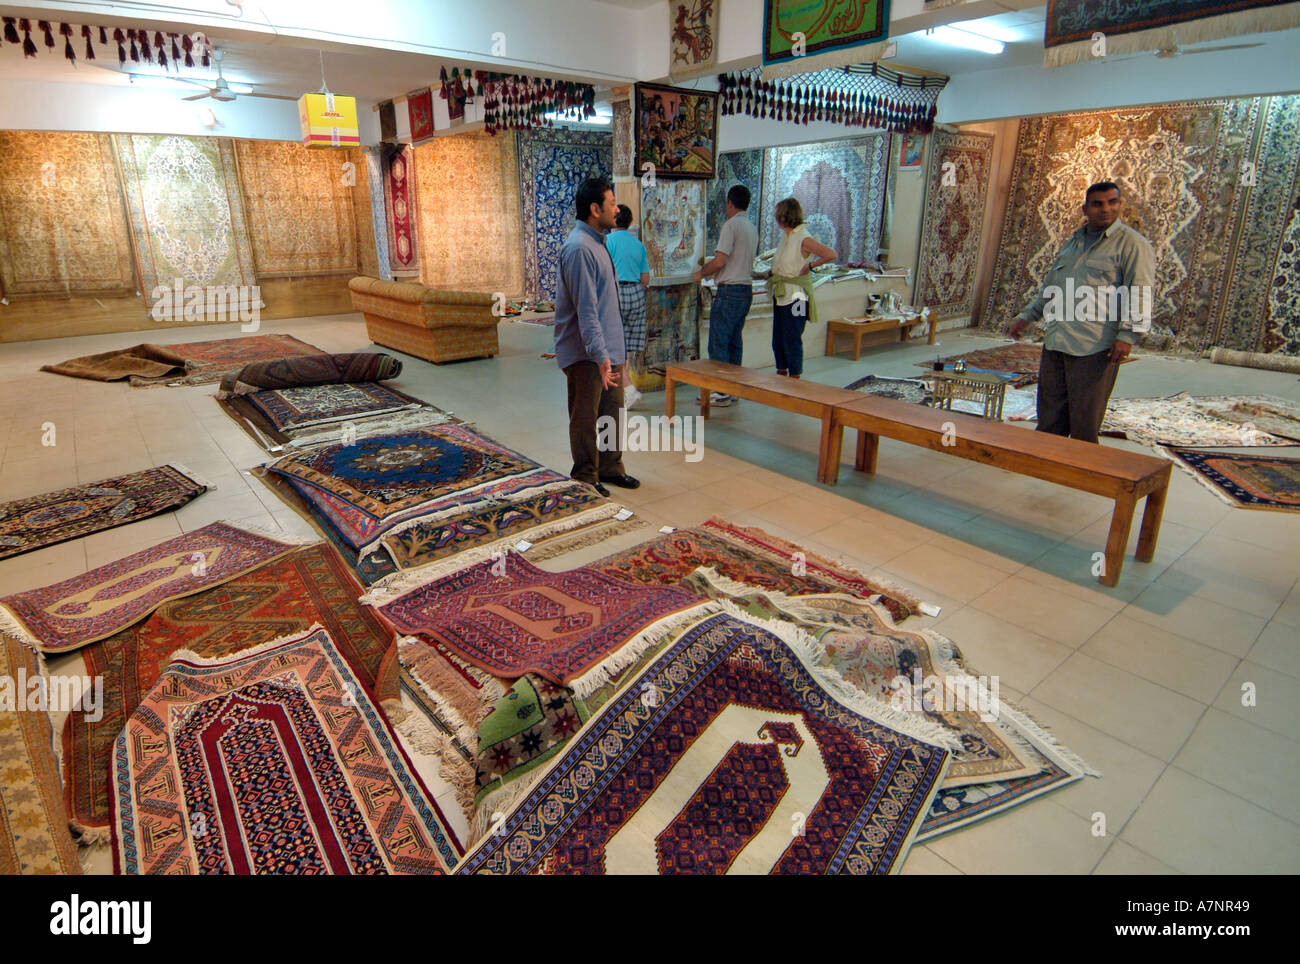 Teppich Fabrikverkauf in der Nähe von Sakkara, Ägypten Stockfotografie -  Alamy